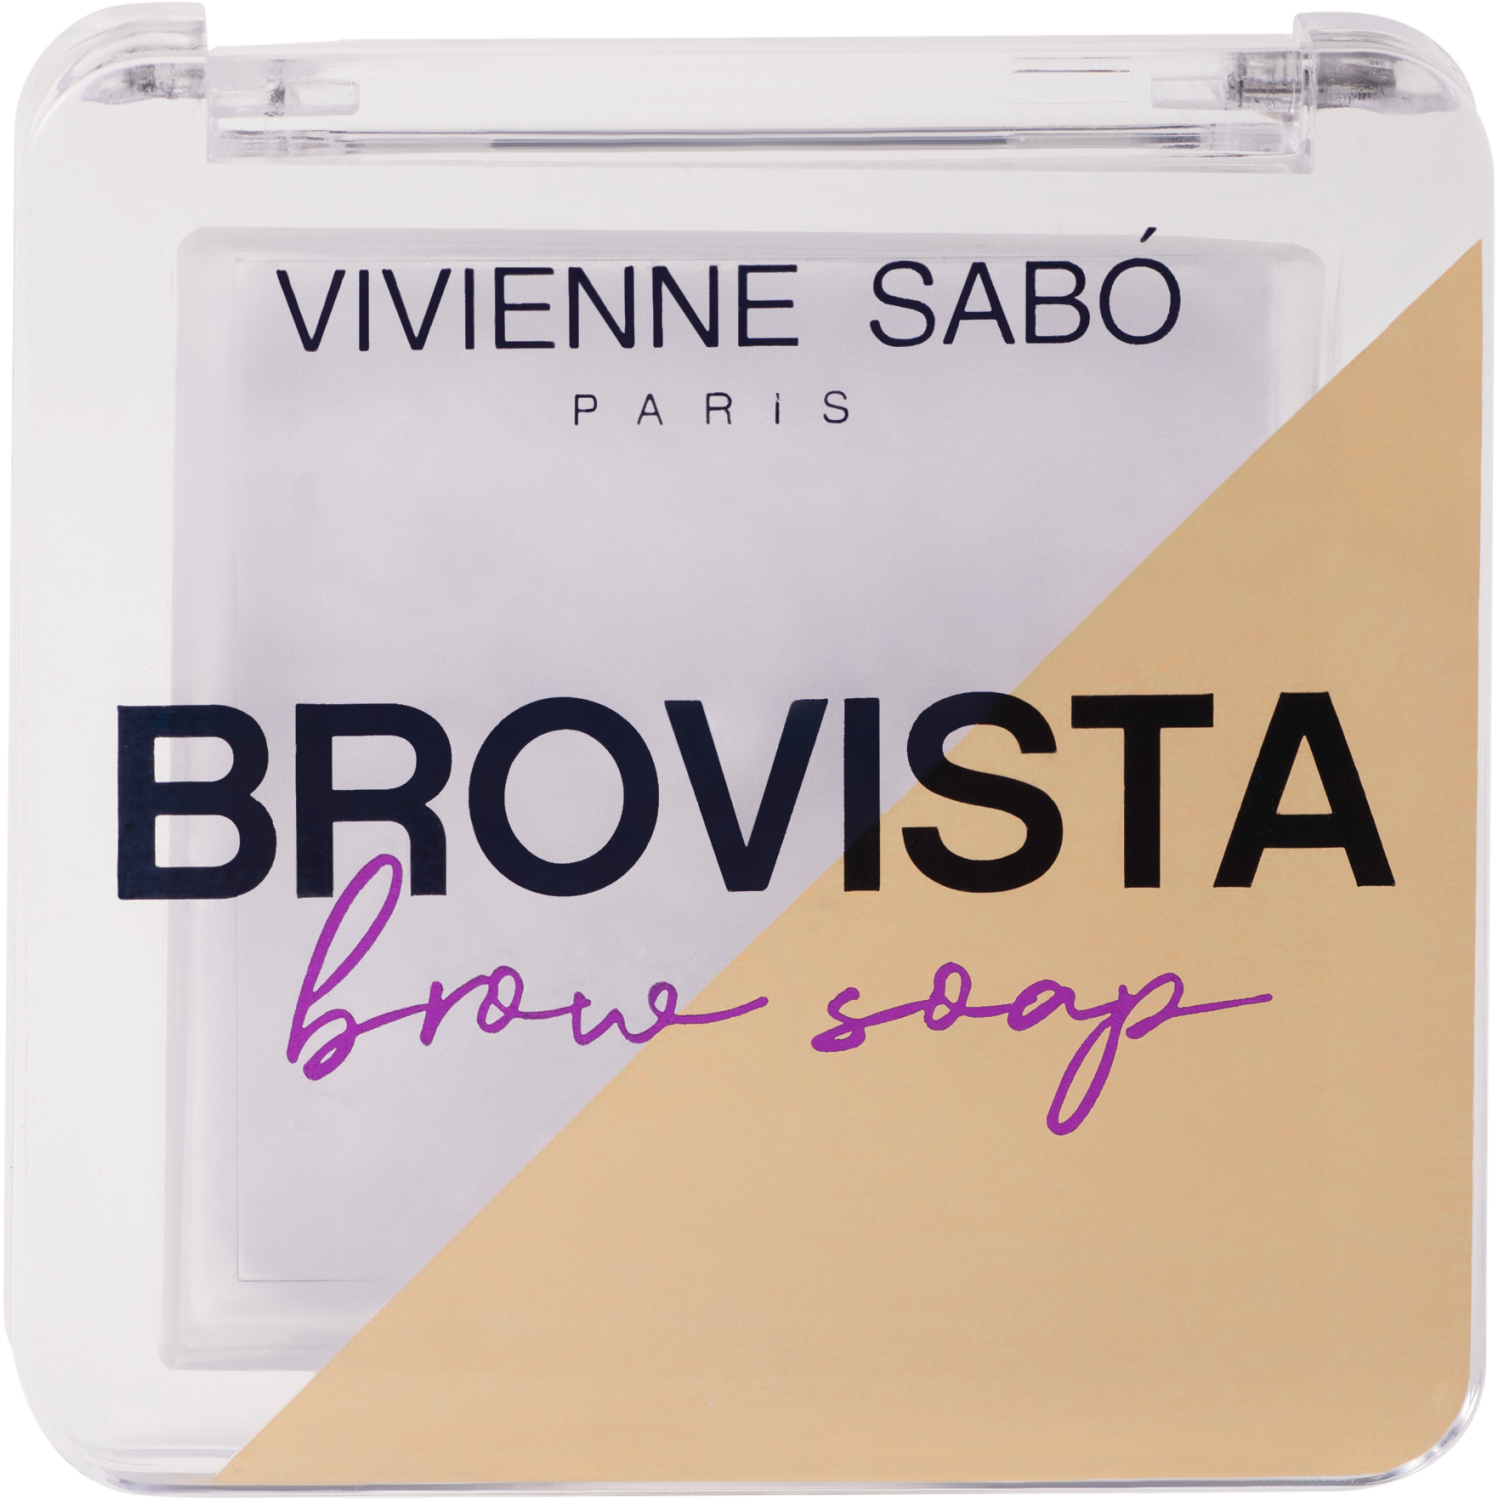 Фиксатор для бровей Vivienne Sabo Brovista brow soap, эффект ламинирования бровей, прозрачно-белесый, 3гр. карандаш для бровей ультратонкий 204 тауповый